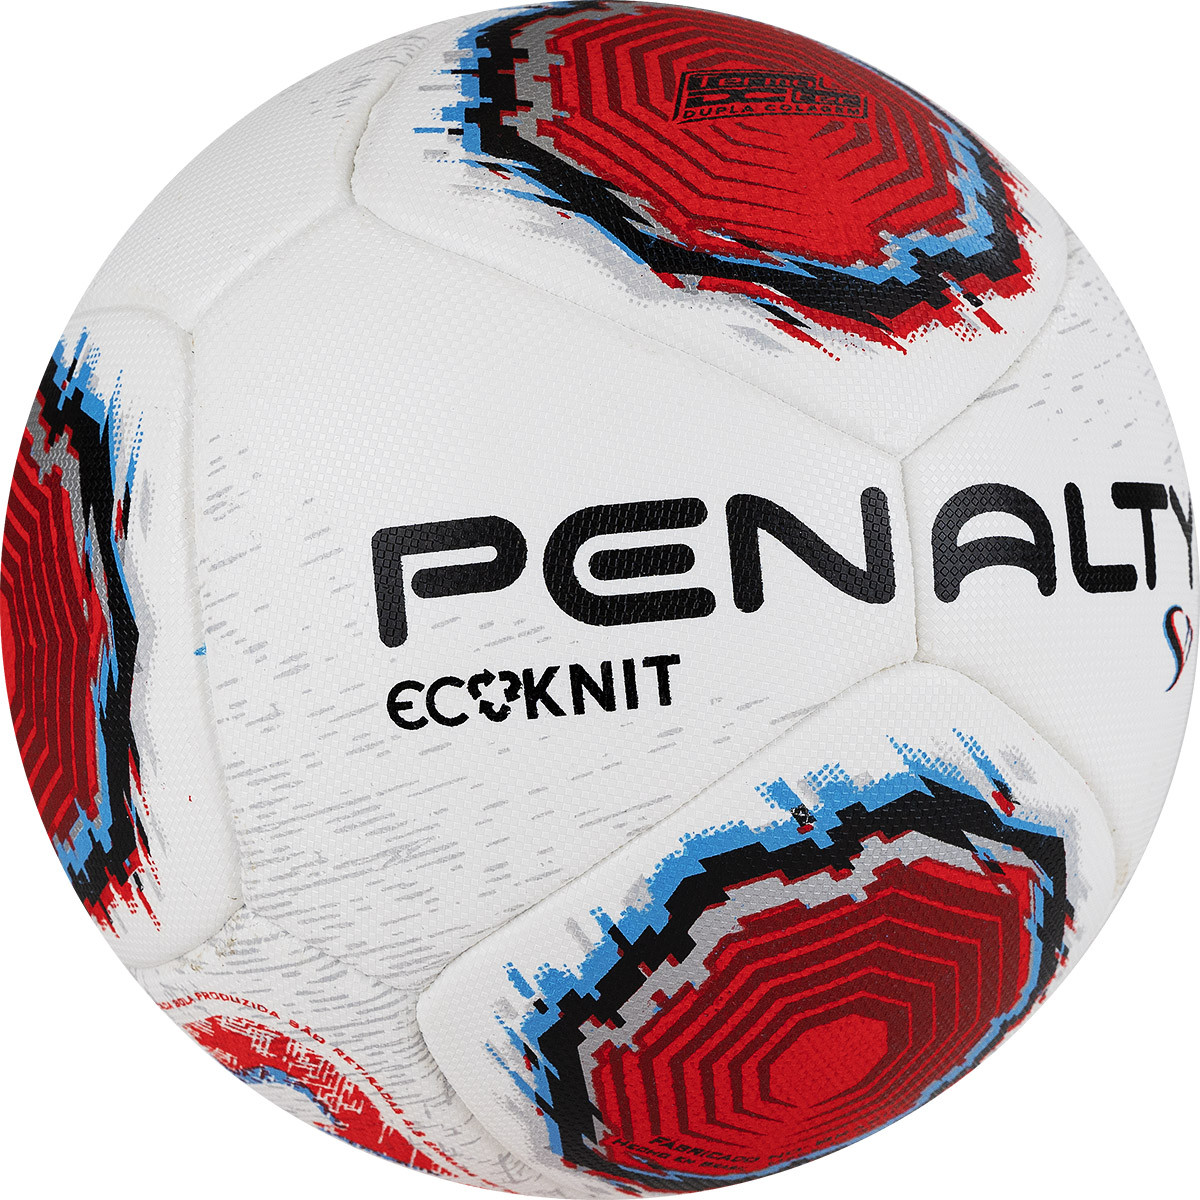 Мяч футбольный Penalty Bola Campo S11 Ecoknit XXII, 5416231610-U, р.5, FIFA Pro, PU, терм.,бел-кр-син 1200_1200